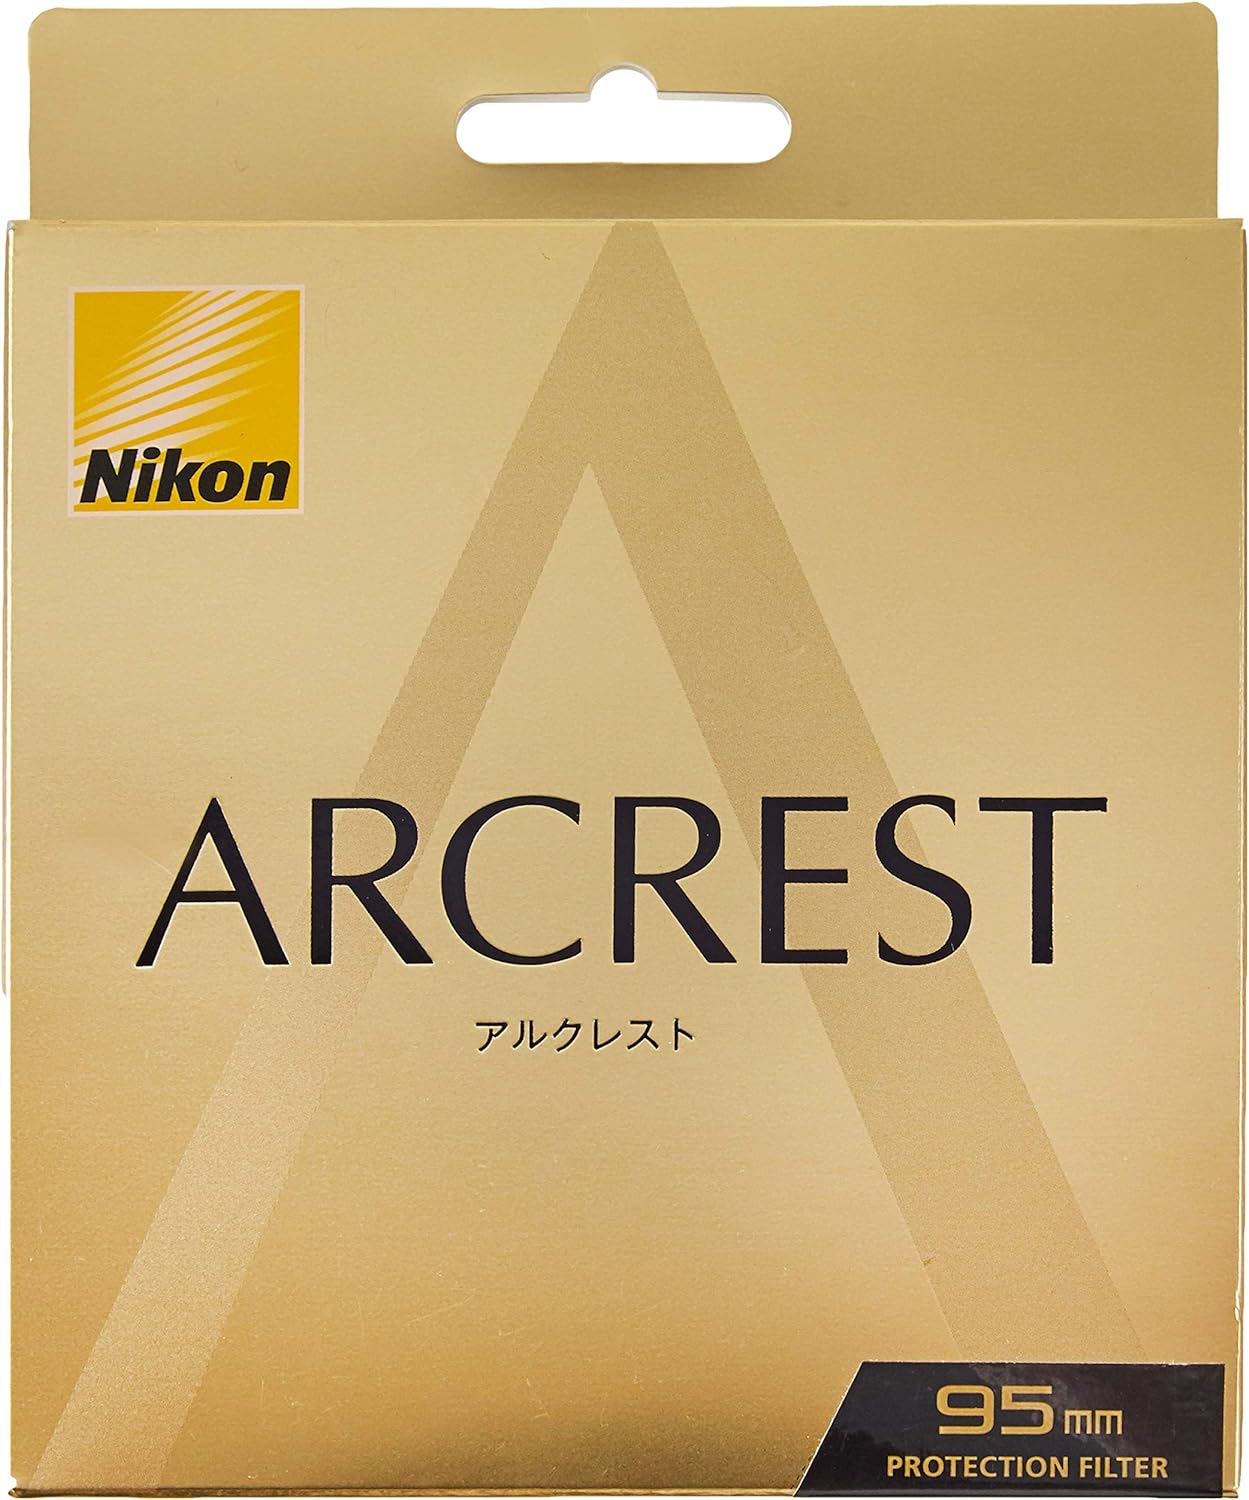 Nikon ARCREST I LensProtection Filter 46-95mm Size ARII-PF